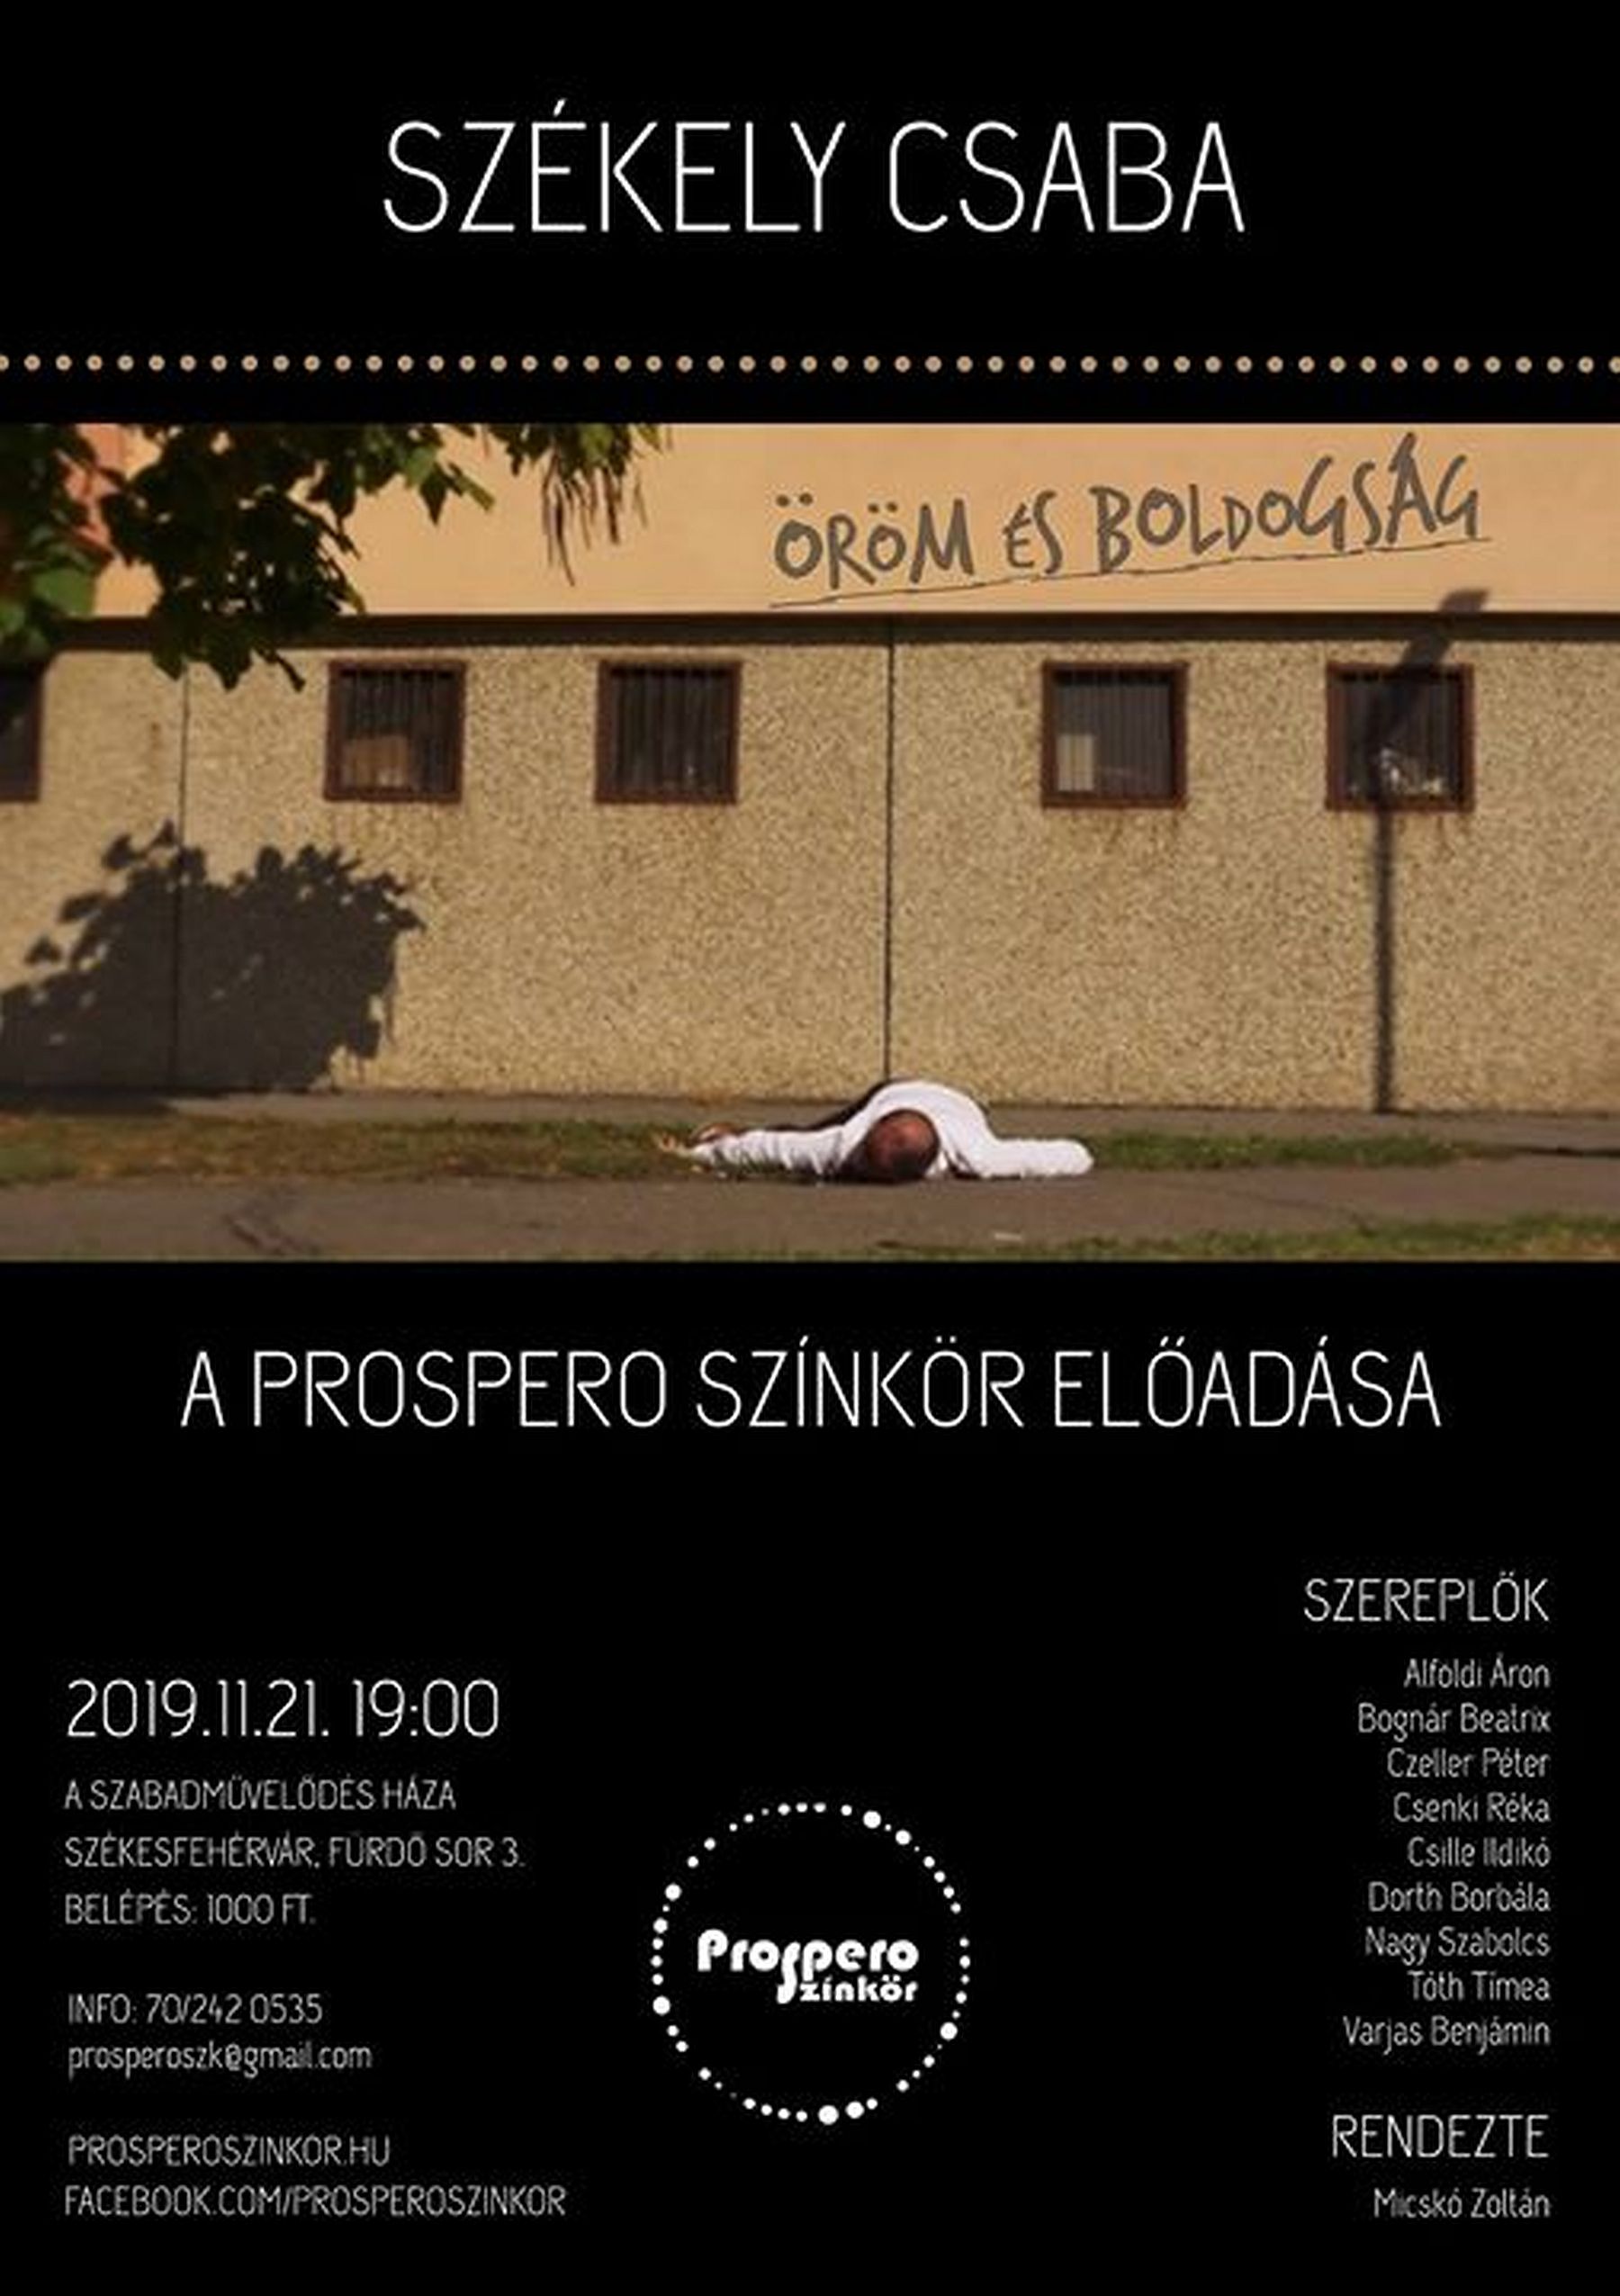 Székely Csaba: Öröm és boldogság - a Prospero Színkör előadása csütörtökön